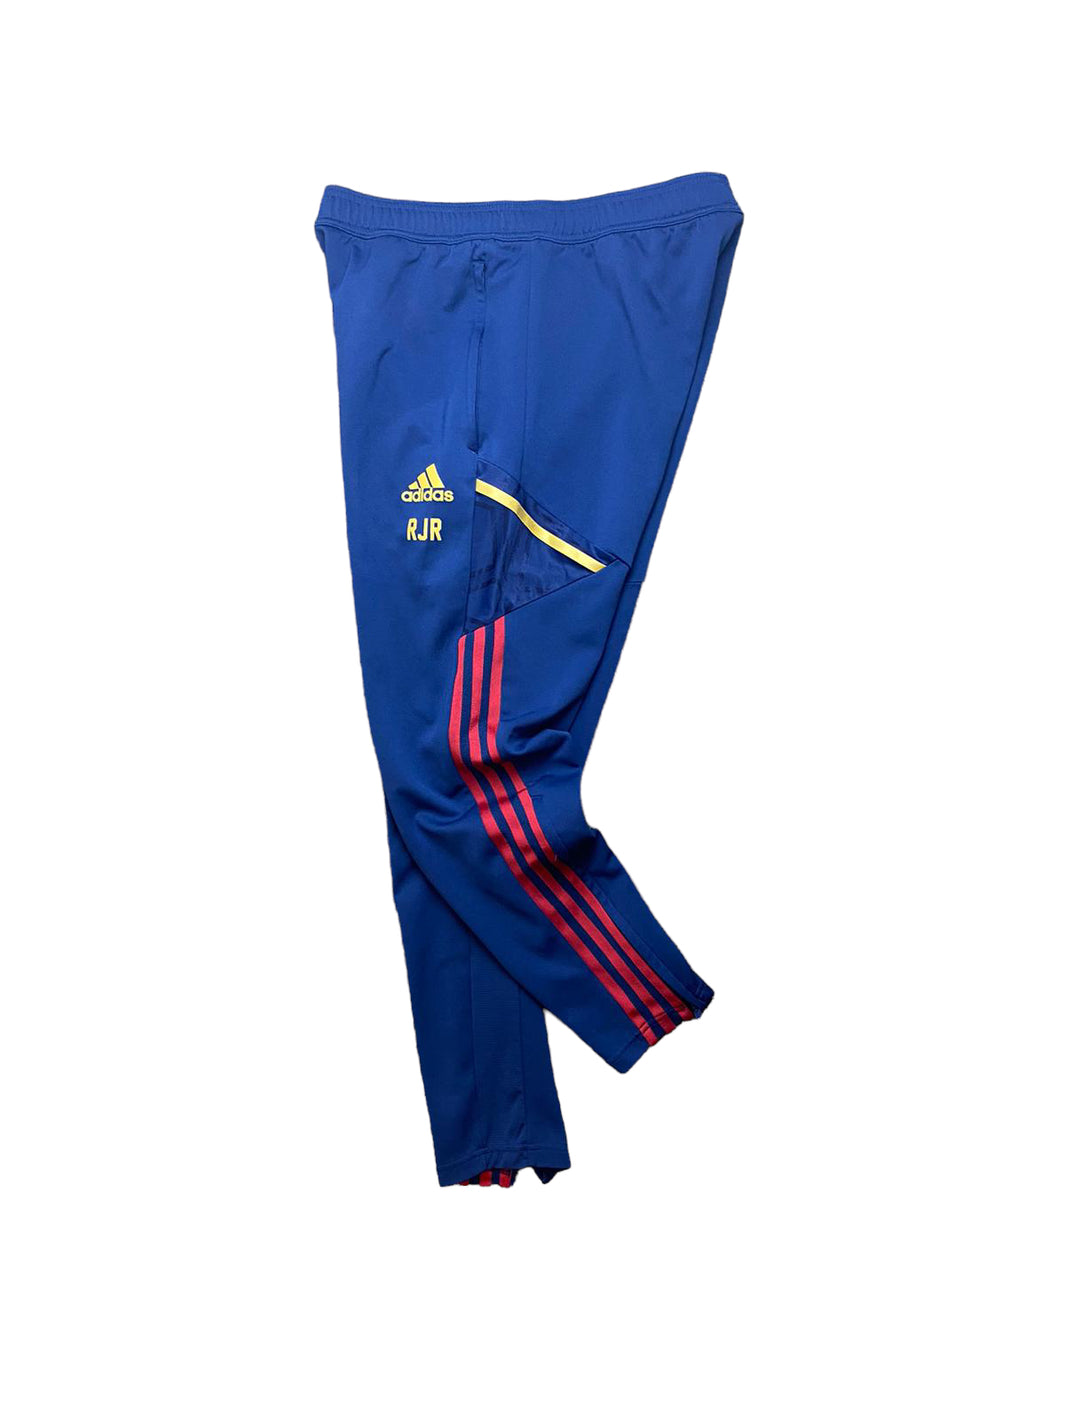 Adidas Ajax Track Pants